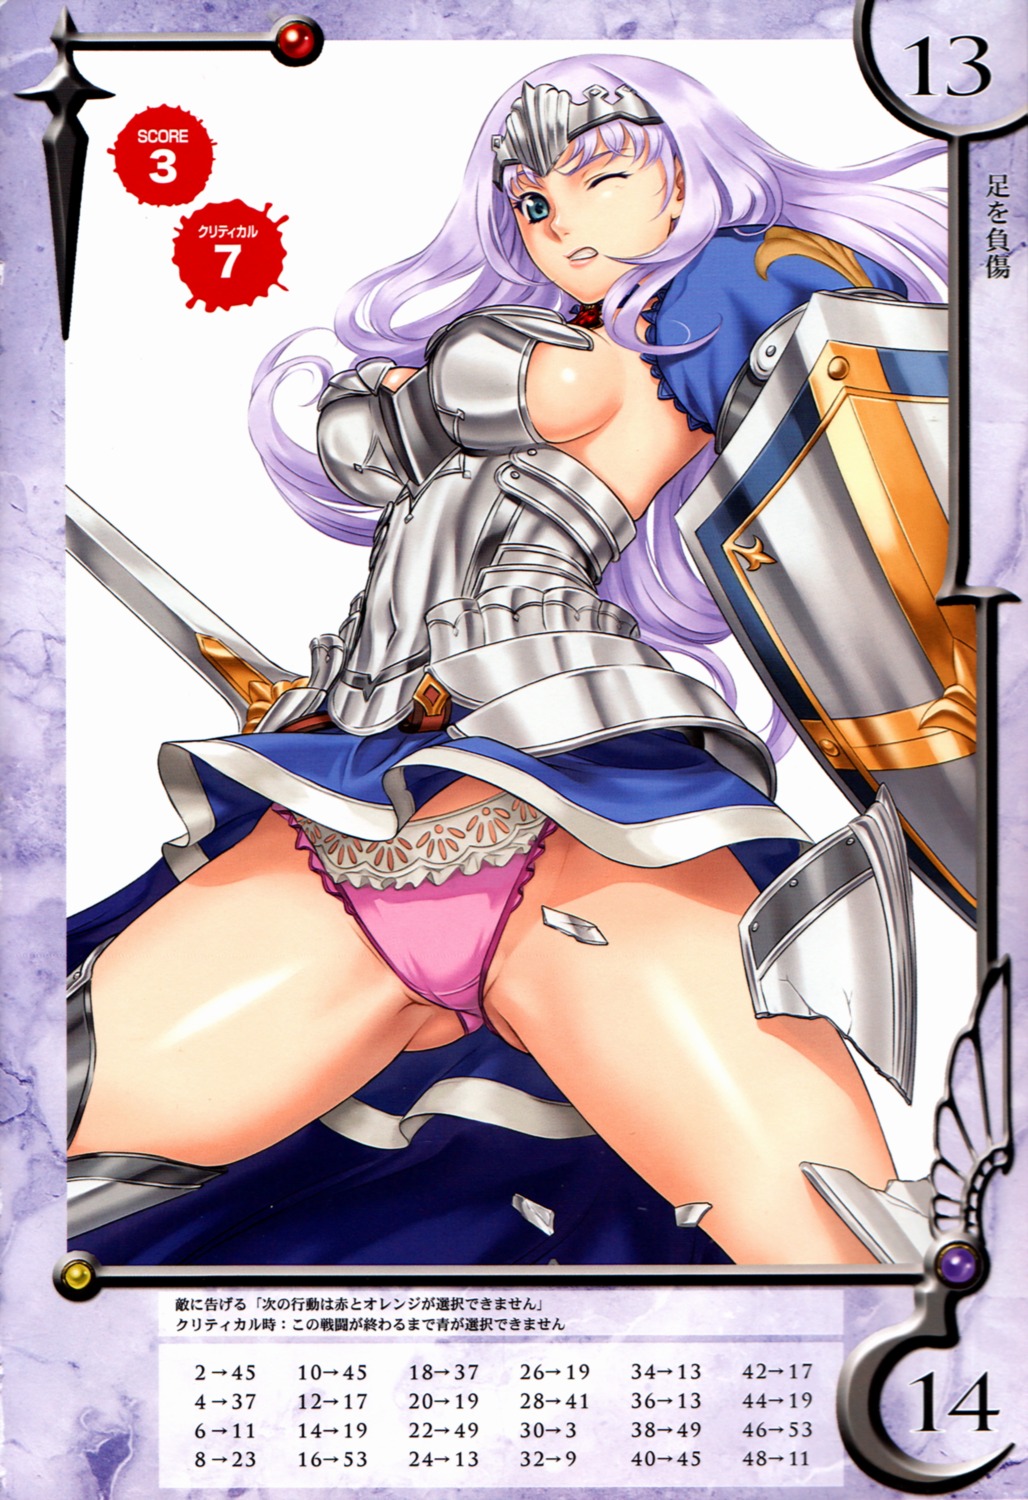 annelotte armor eiwa pantsu queen's_blade queen's_blade_rebellion thighhighs